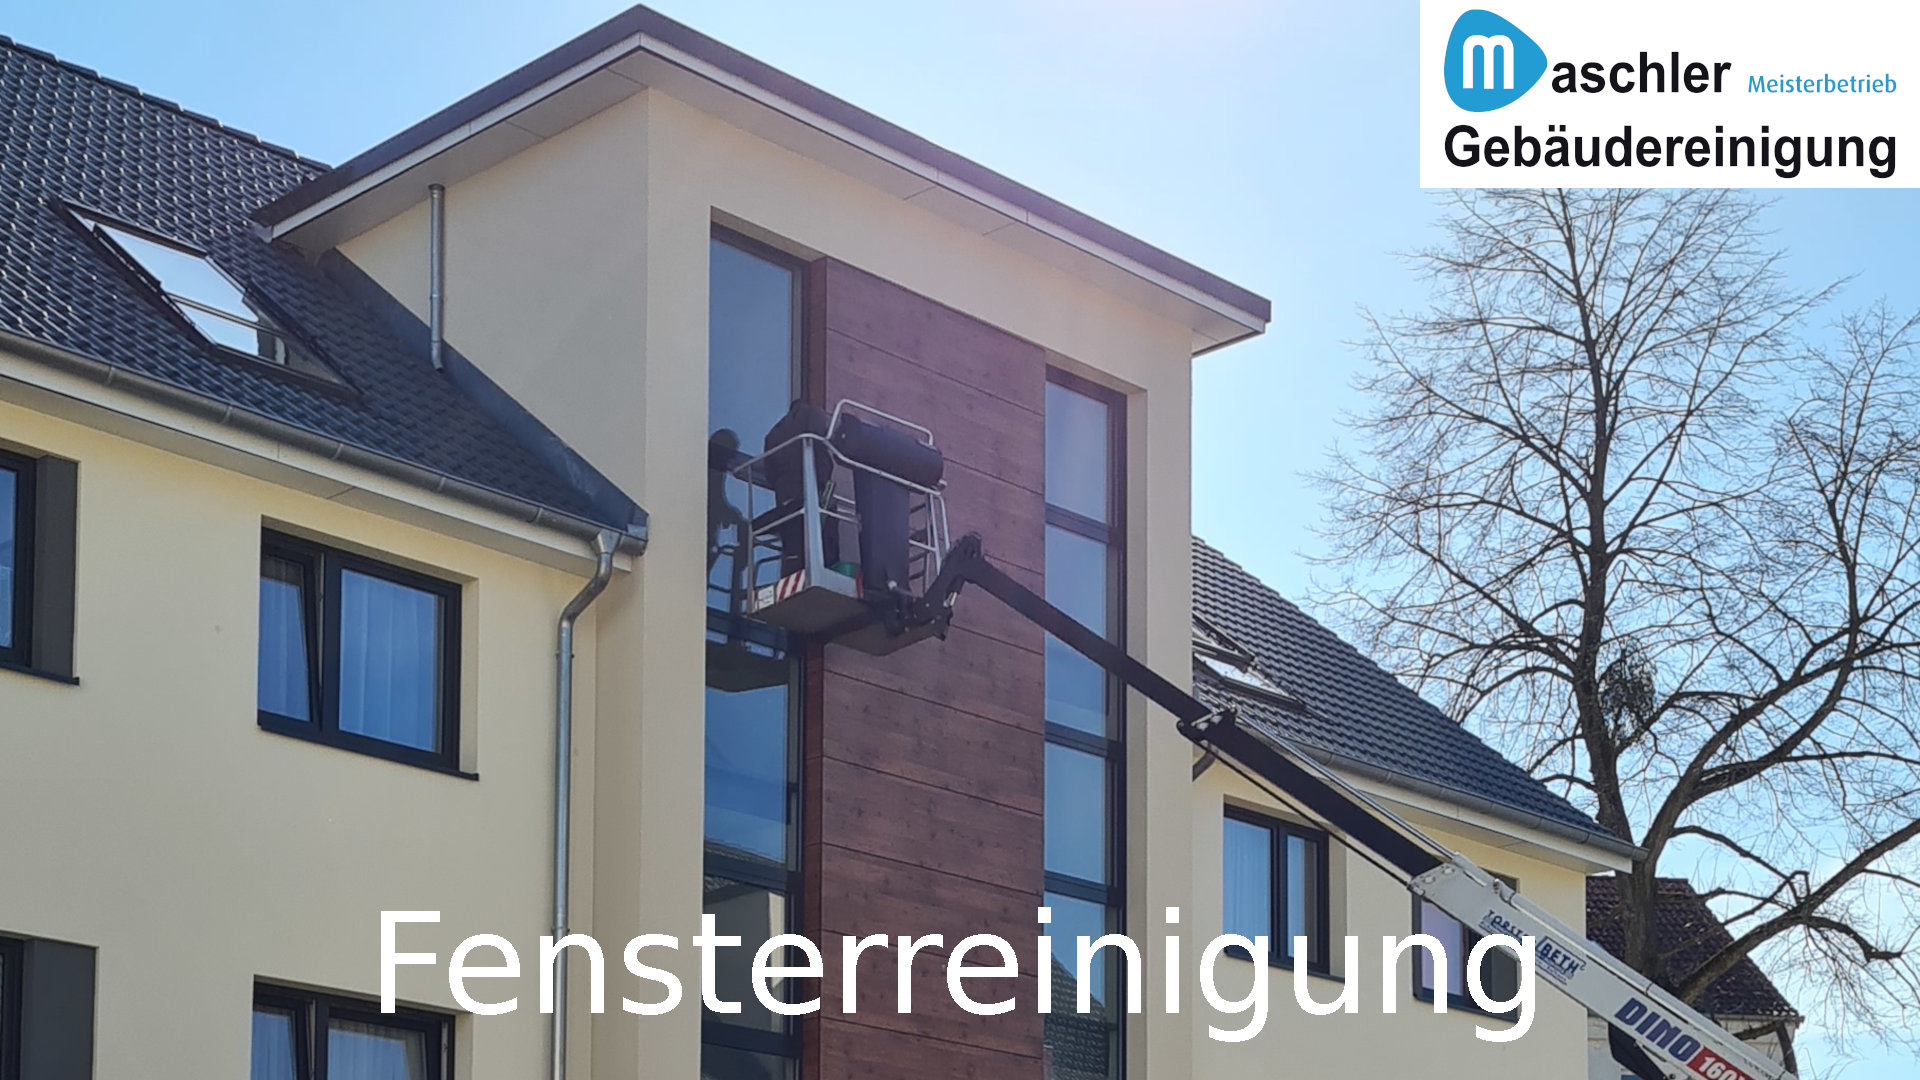 Hausfassade & Fenster Reinigung - Gebäudereinigung Maschler Schwerin